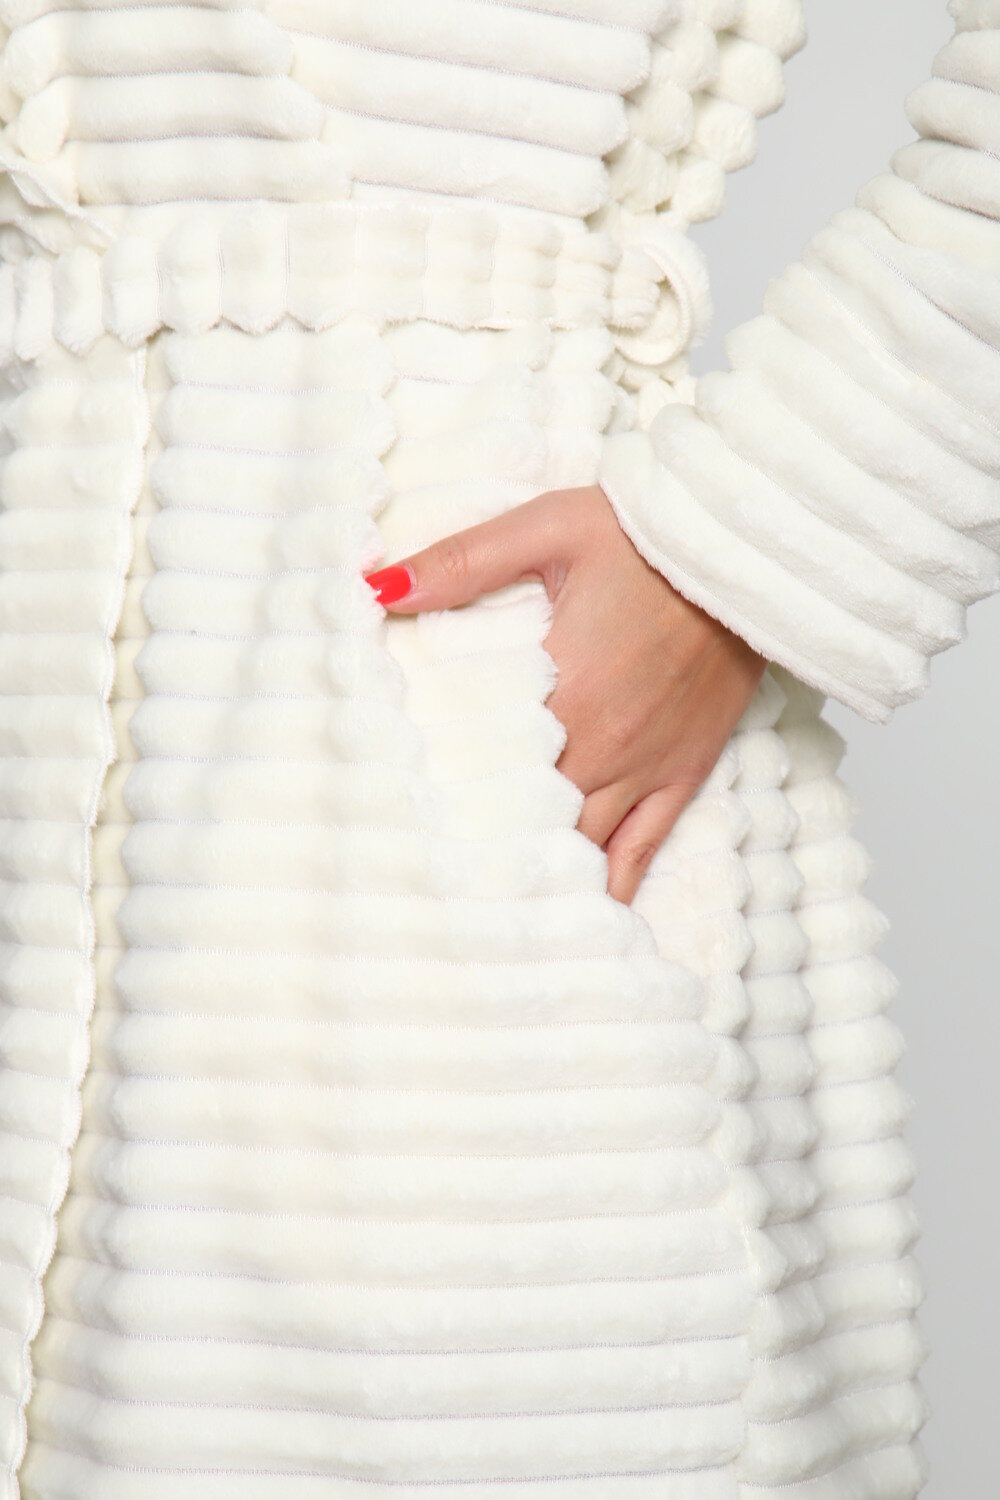 Теплый женский запашной халат с поясом, цвета молочный, размер 54 - фотография № 8